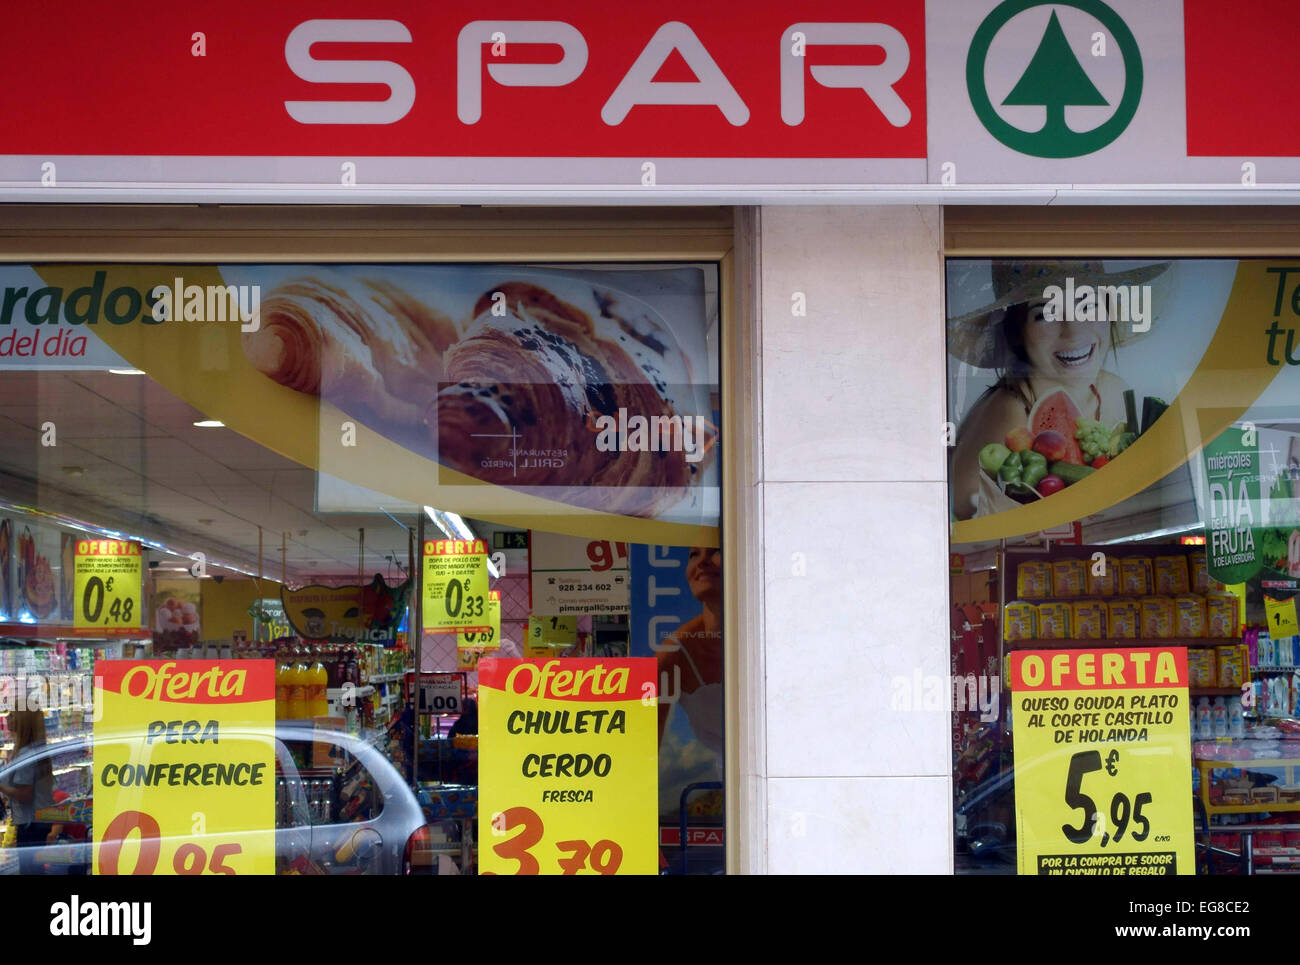 Branch of Spar supermarkets, Las Palmas de Canaria, Canary Islands, Spain Stock Photo